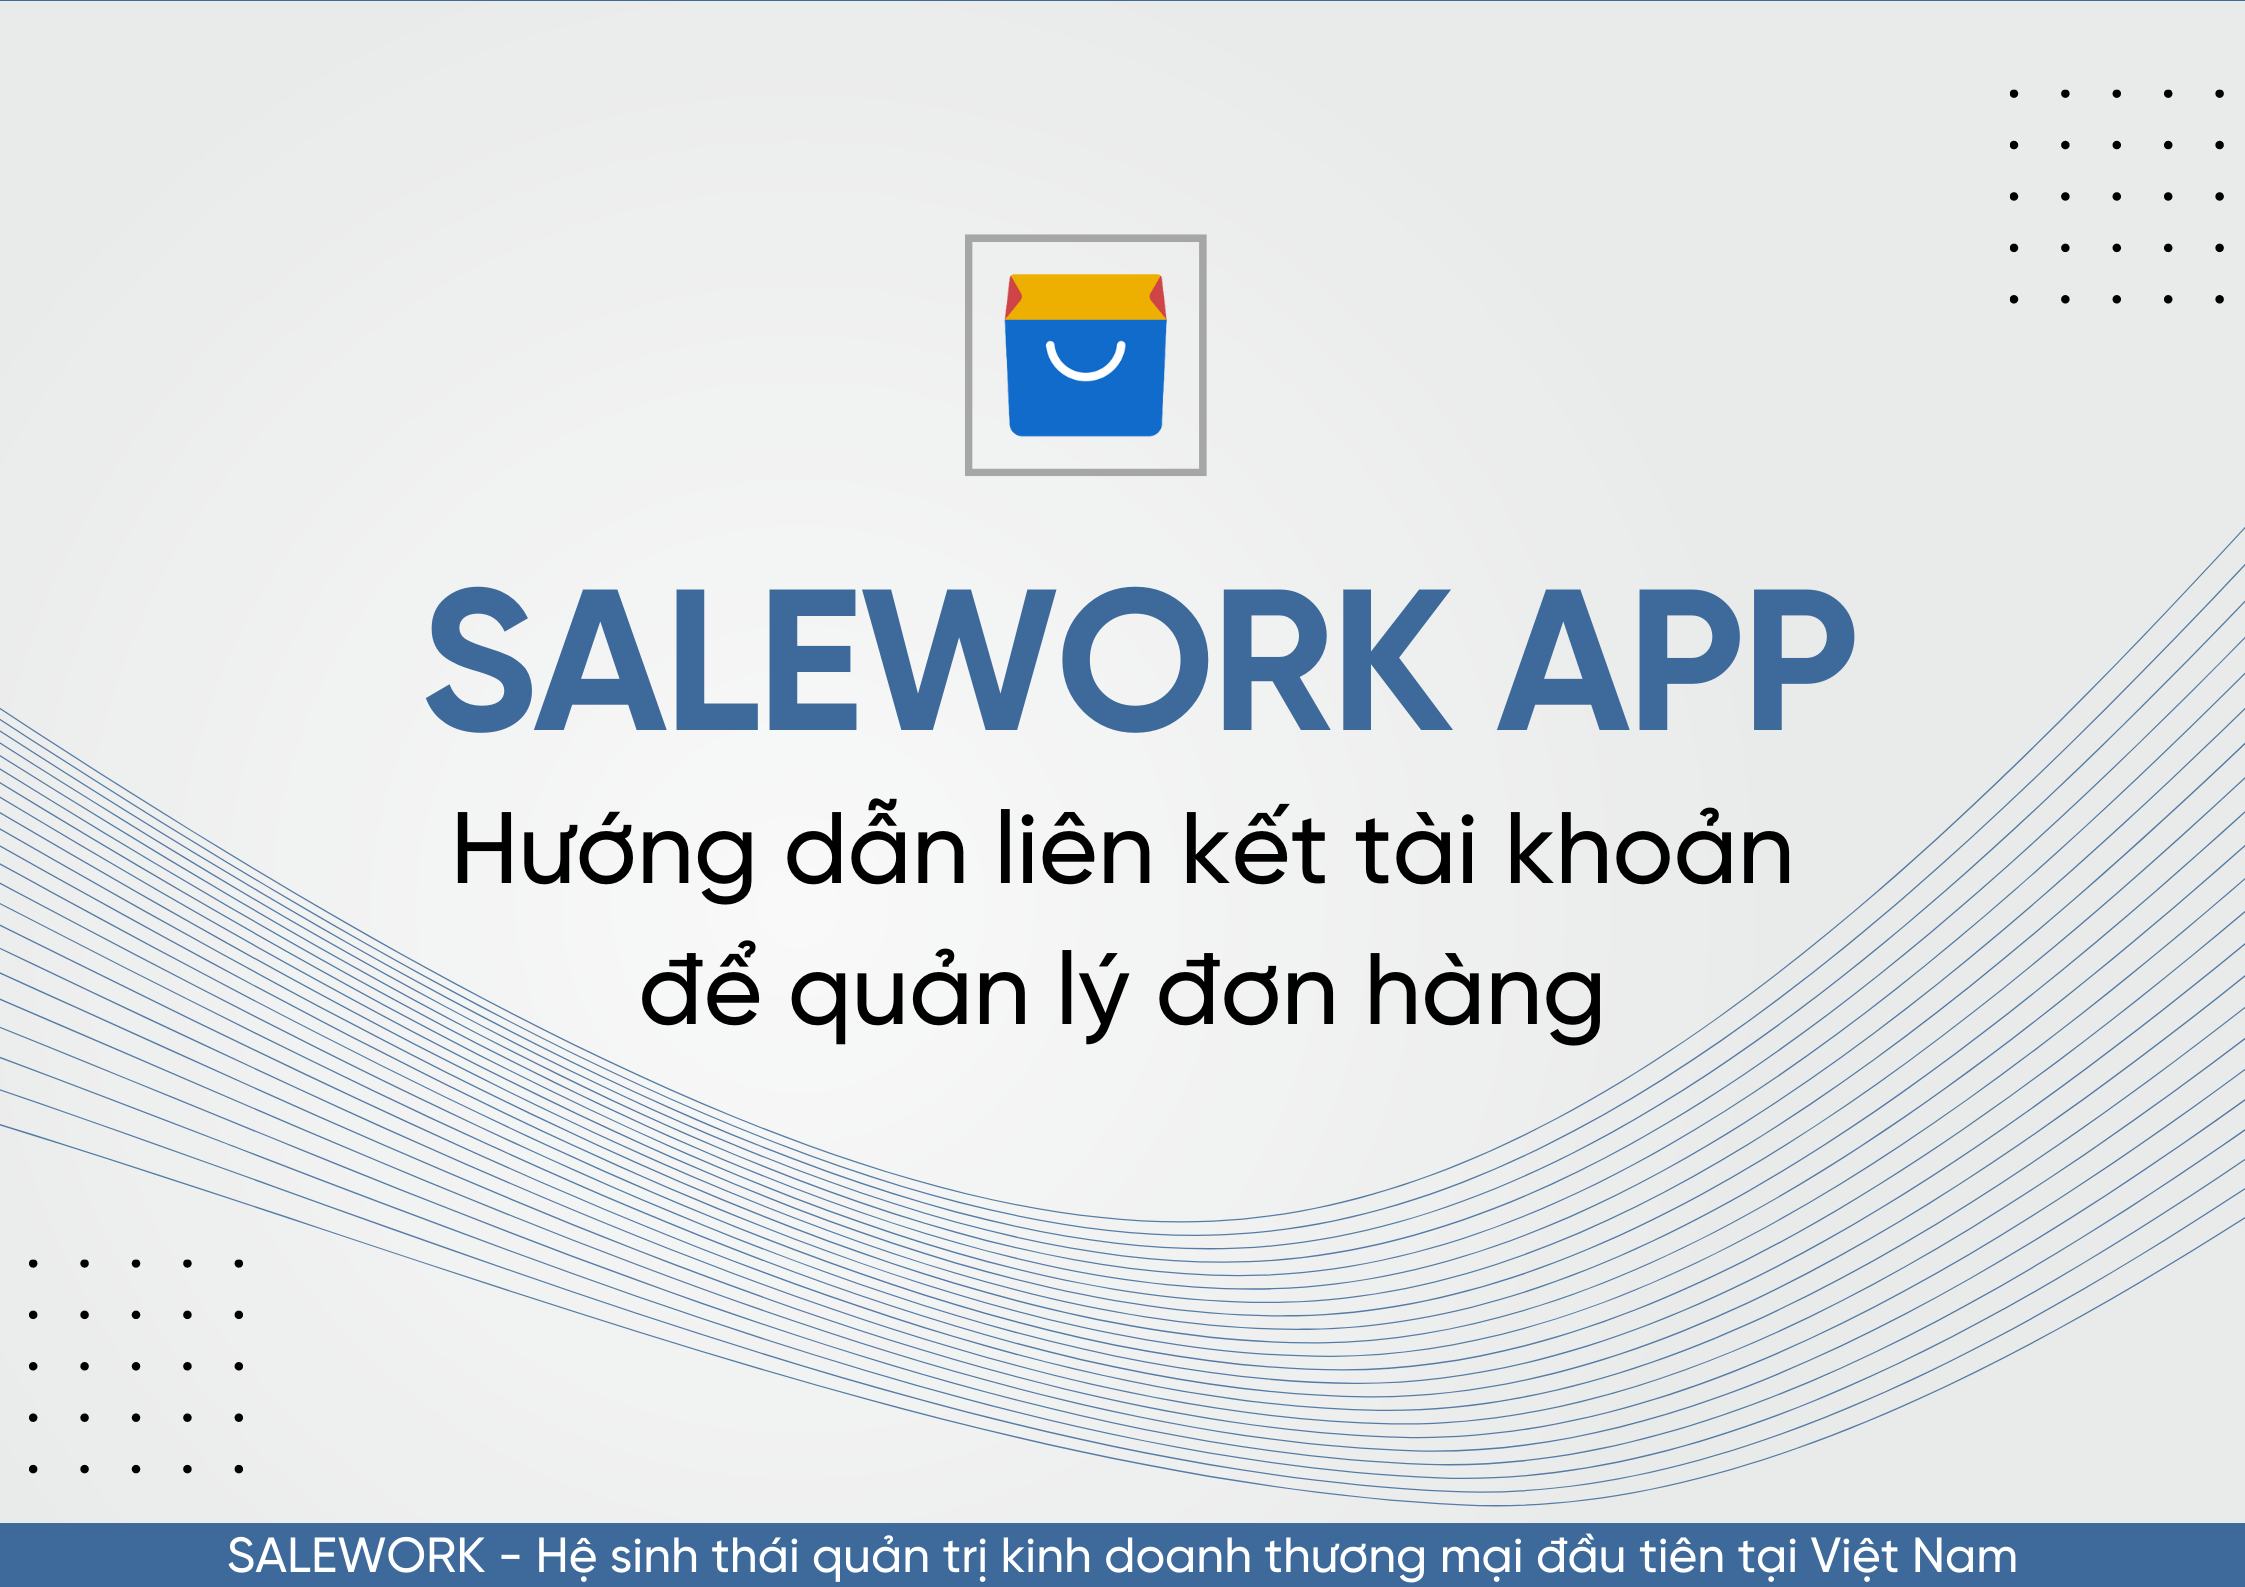 Hướng dẫn liên kết tài khoản để quản lý đơn hàng qua Salework Mobile - 60